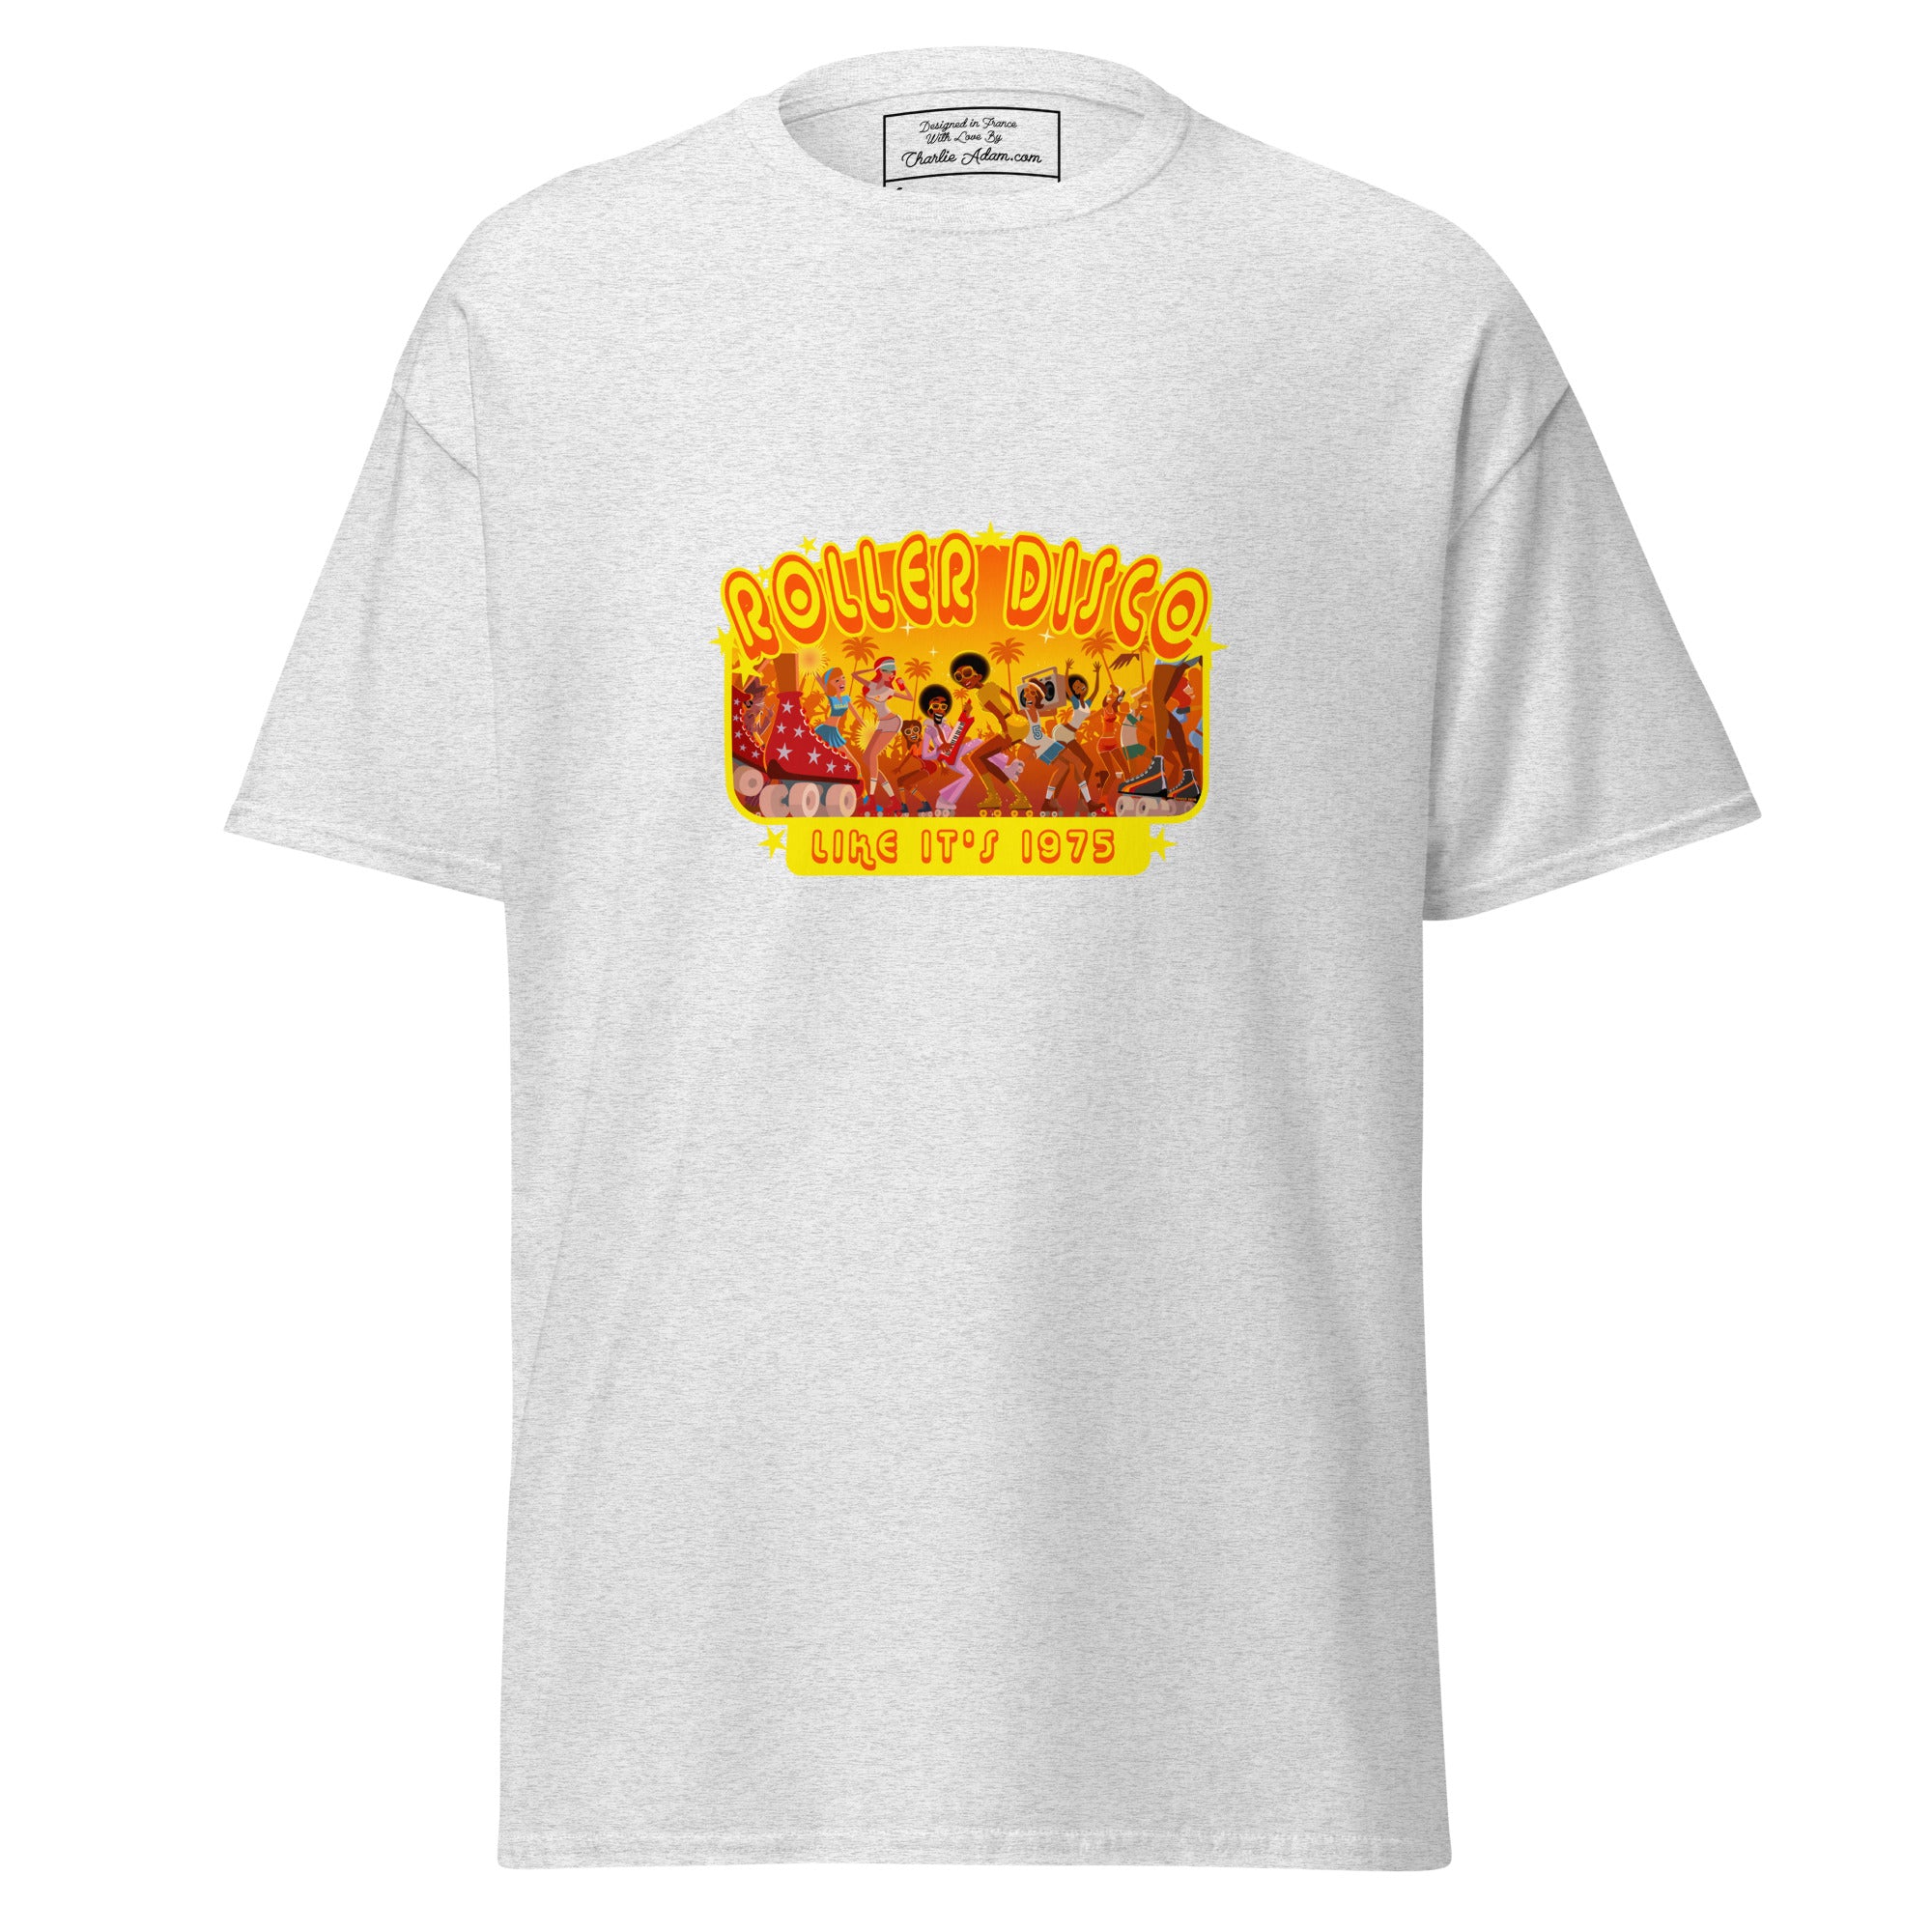 T-shirt classique homme Roller Disco 1975 sur couleurs claires